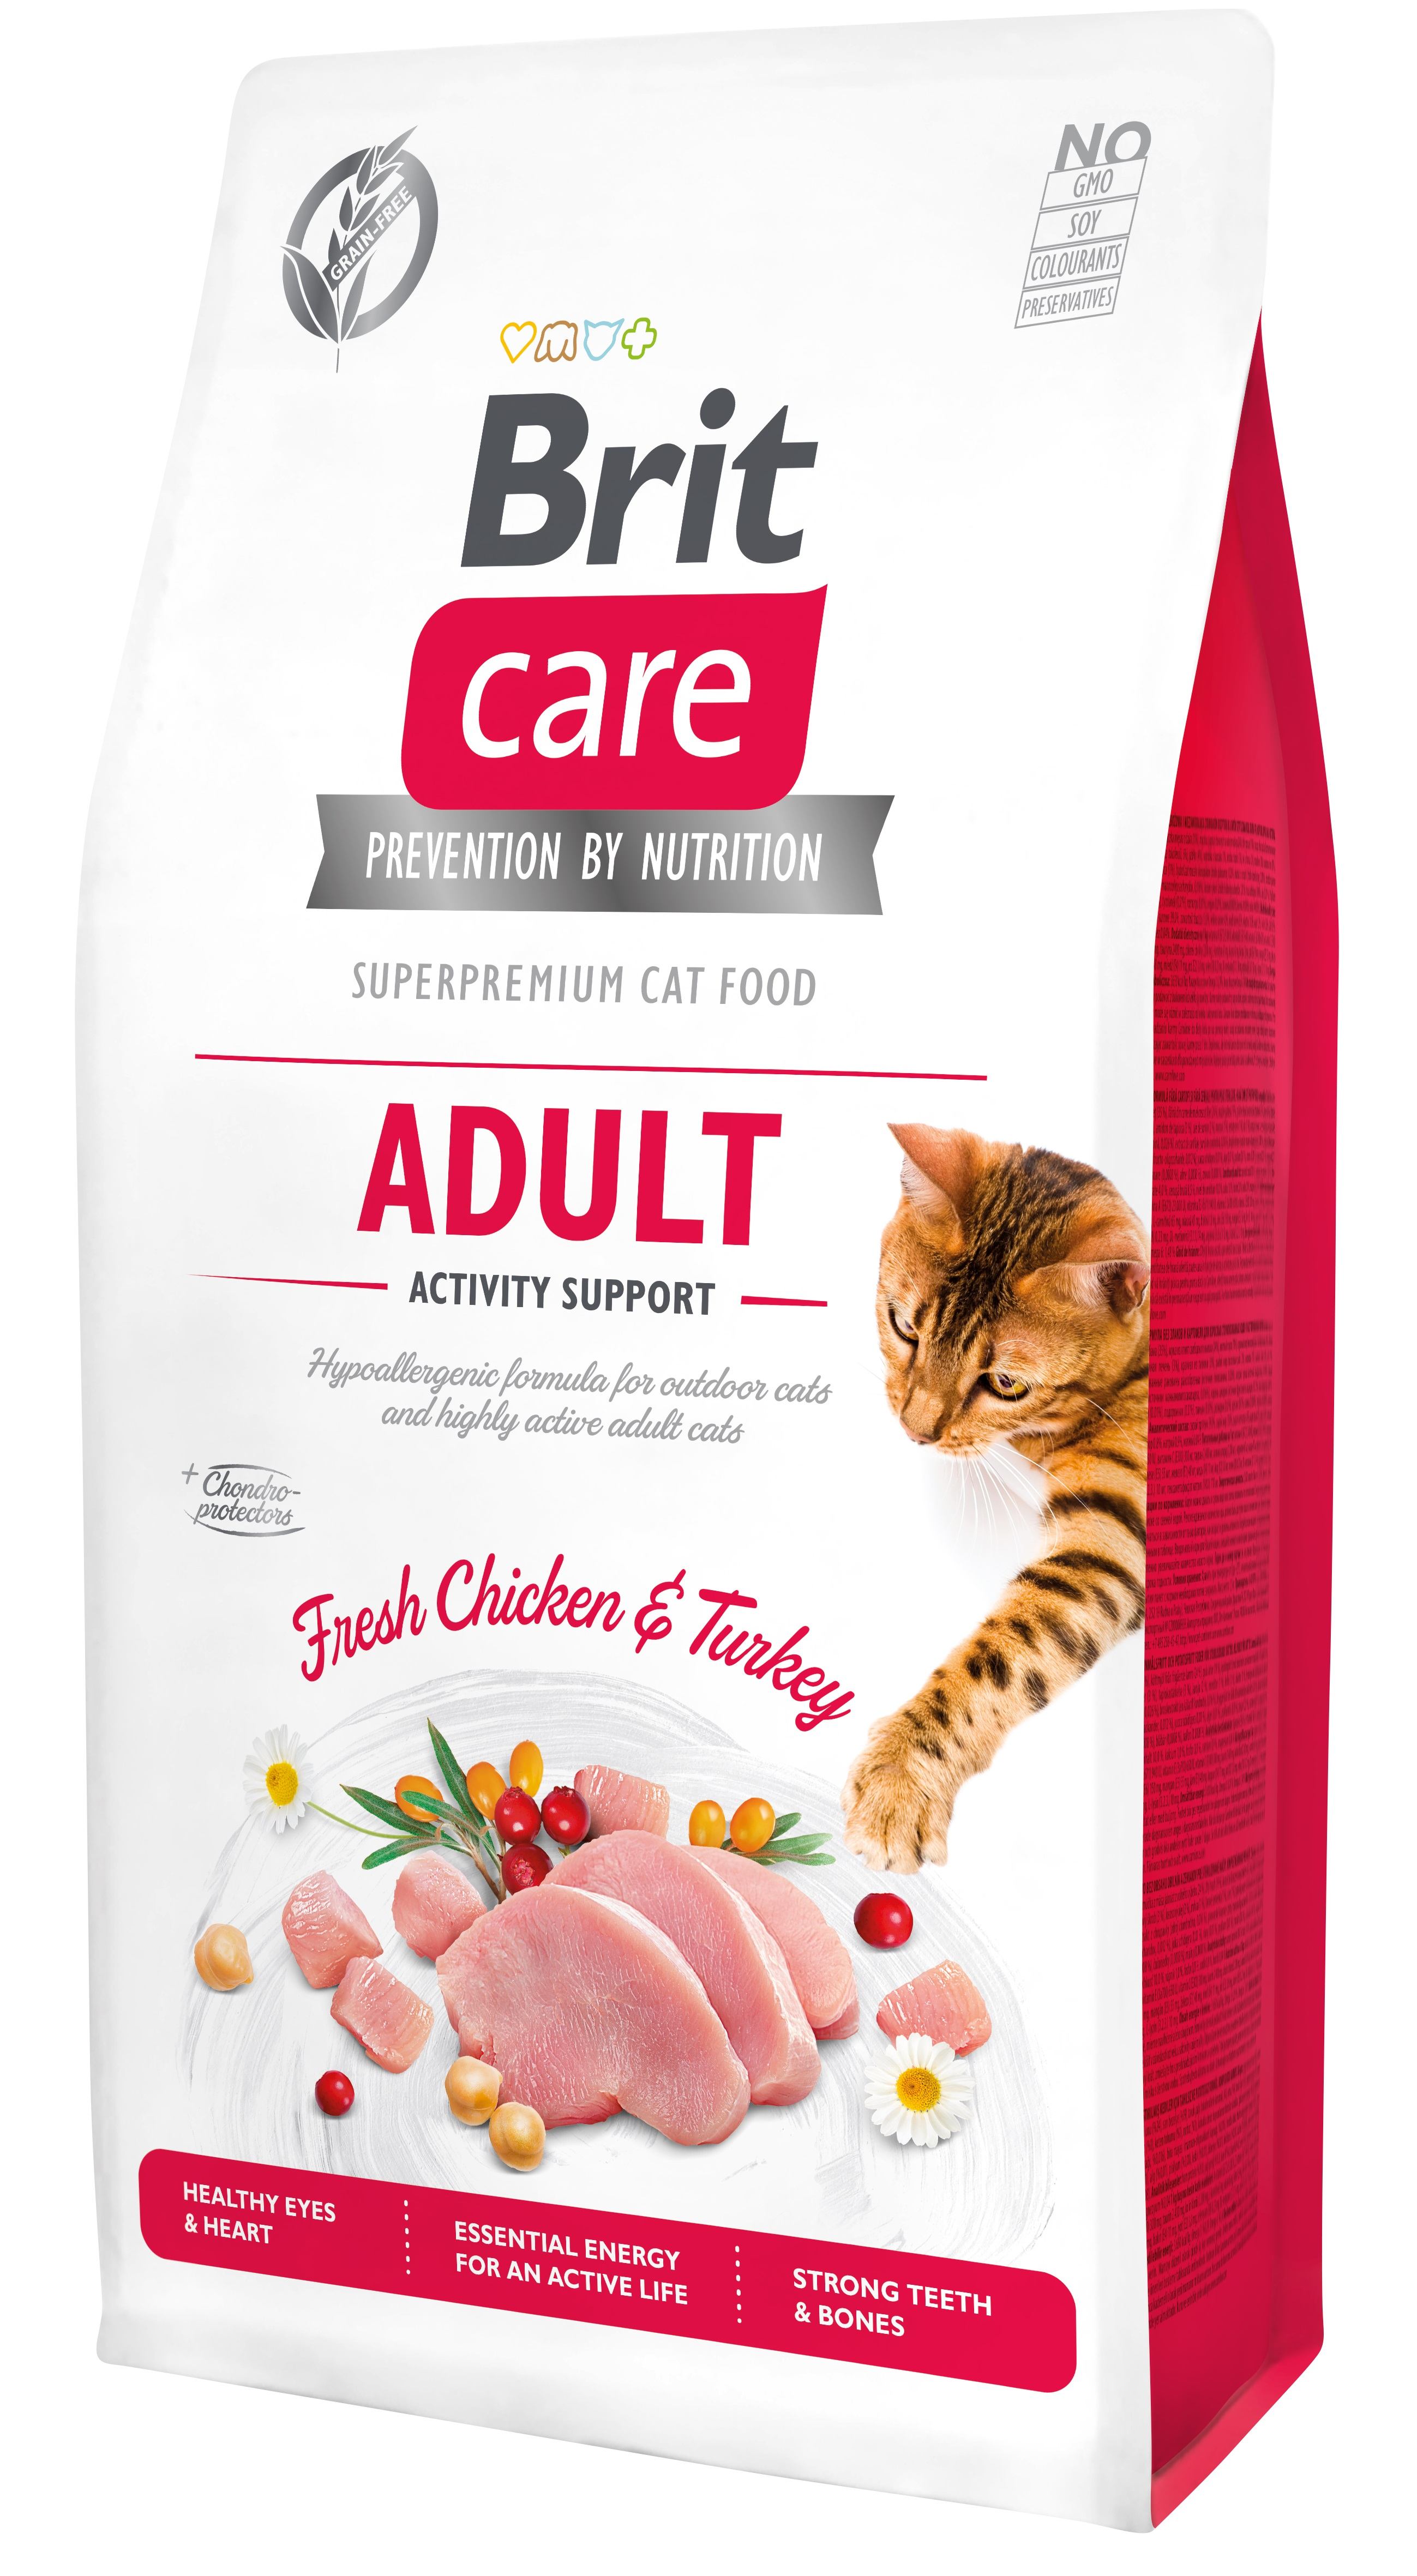 Беззерновой сухой корм для уличных и активных кошек Brit Care Cat GF Adult Activity Support, со свежей курицей и индейкой, 7 кг - фото 1